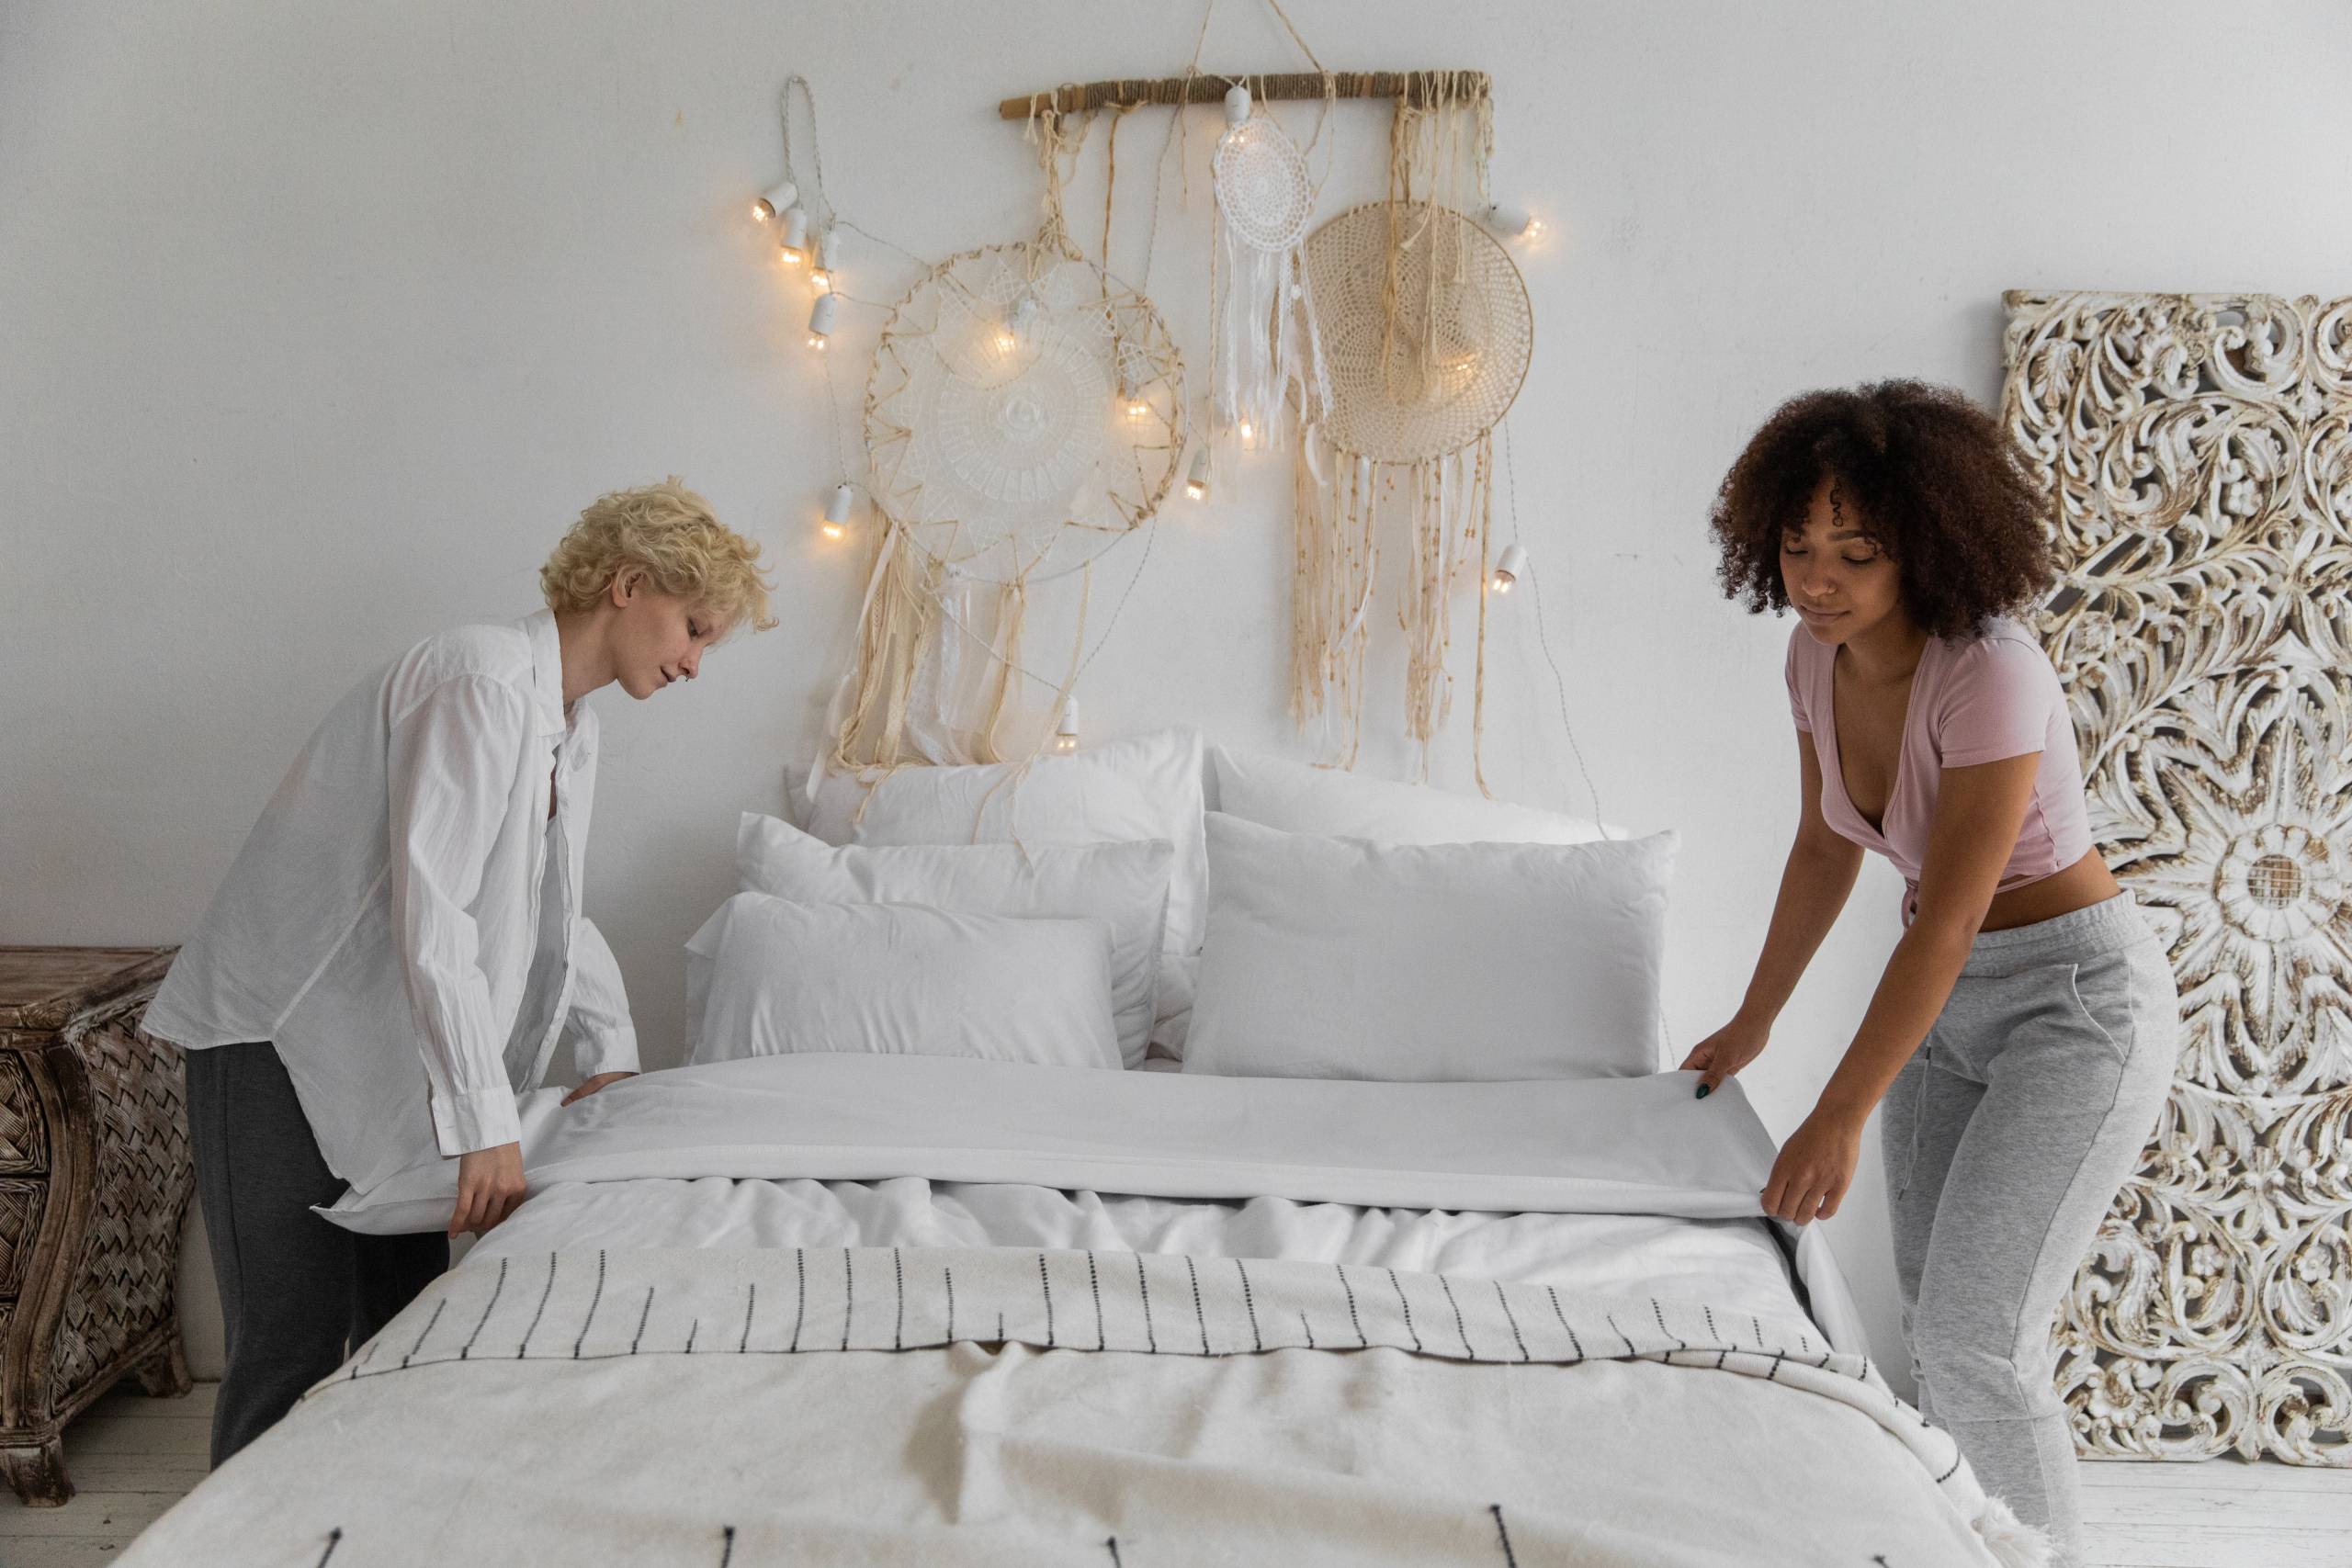 Es malo dormir con el colchón en el suelo? - Información útil y práctica  sobre colchones